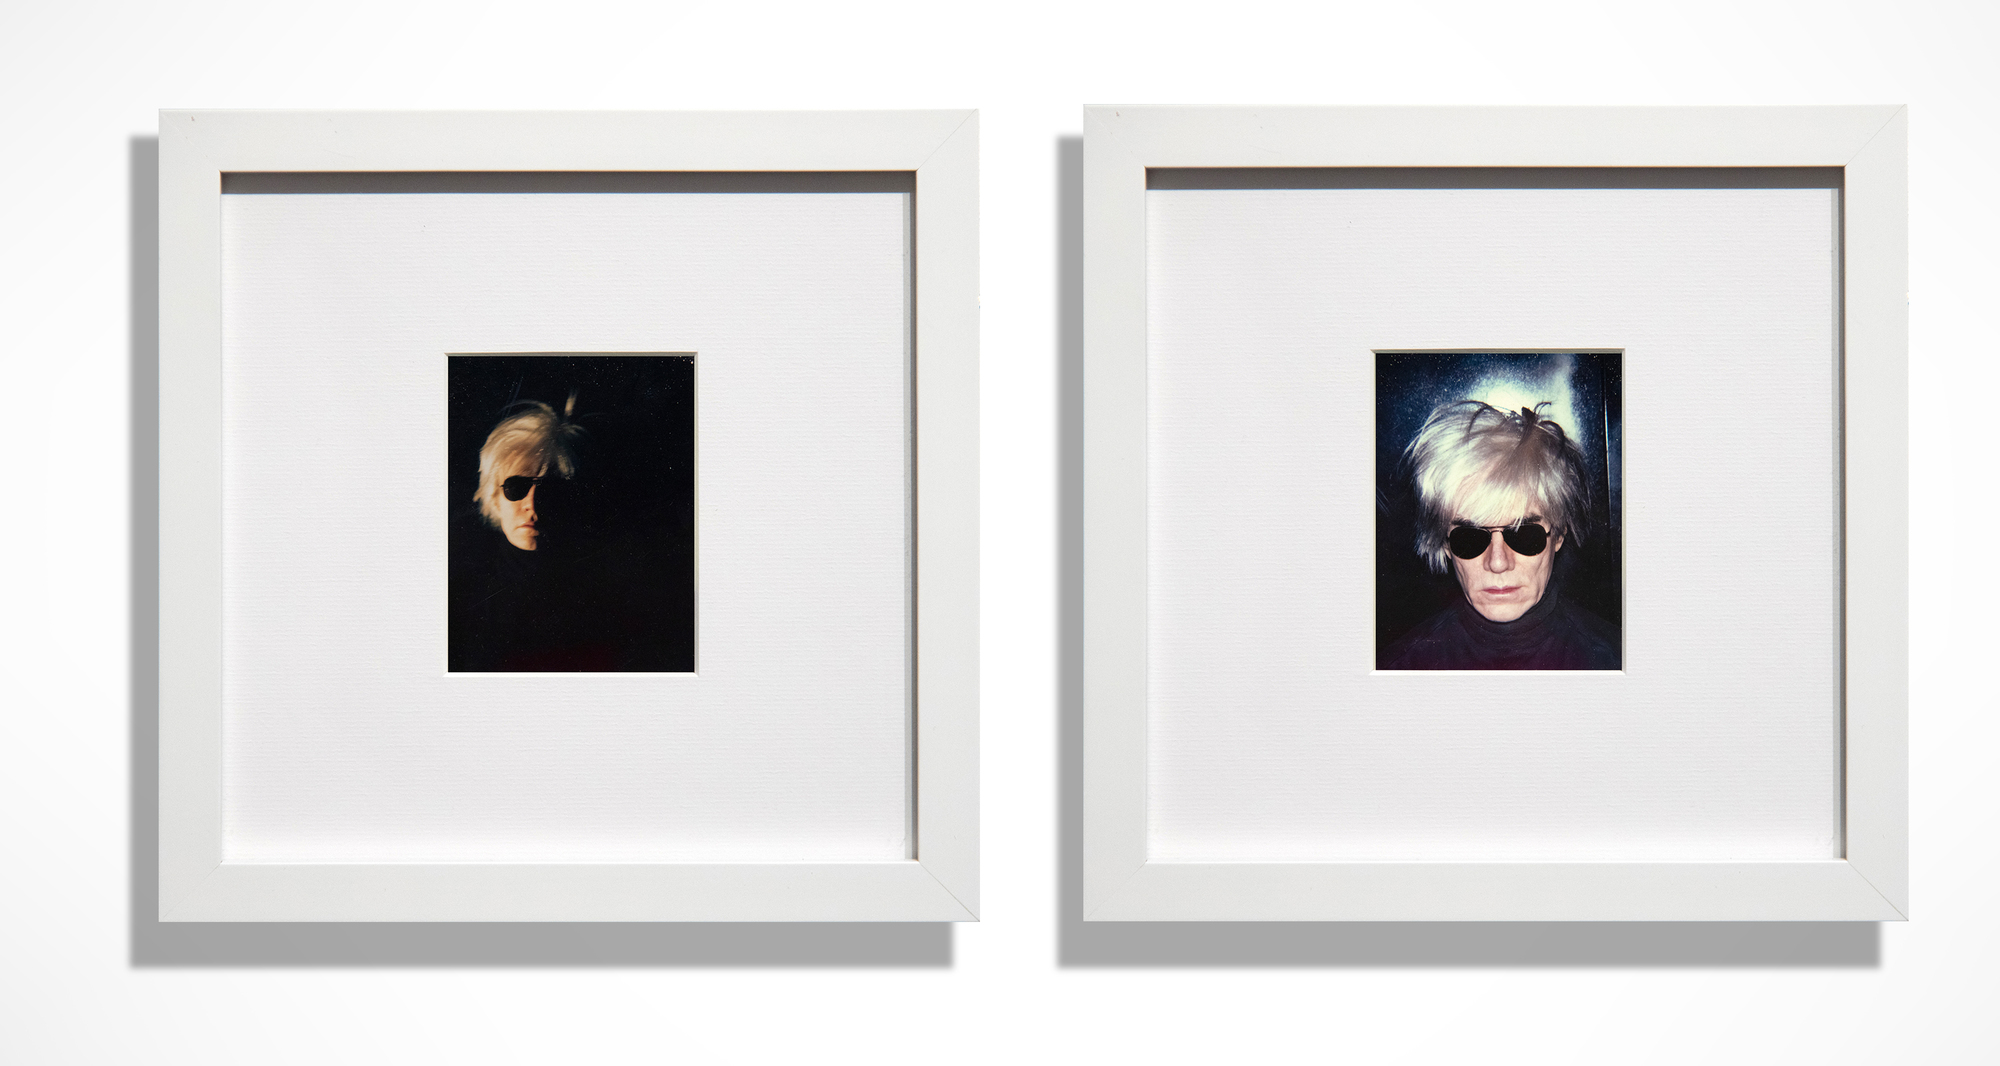 Beginnend 1963 mit einem Siebdruck, der von einem Fotokabinenstreifen abgeleitet war, erforschte Warhol wiederholt sein Konterfei, was in dem ikonischen Bild &quot;Fright Wig&quot; gipfelte. Das Polaroidfoto, das für seine Darstellung von Berühmtheiten und seiner Selbstdarstellung unentbehrlich war, spielte eine entscheidende Rolle in seinem Werk und in unserer Wahrnehmung seines massiven Beitrags zur amerikanischen Nachkriegskunst. Die beiden präsentierten Bilder, dunkel und gespenstisch, sind wunderschön gestaltete, gut inszenierte Porträts. Diese Selbstporträts sind in eine stimmungsvolle Atmosphäre gehüllt, die seinen Körper ausweidet. Sie zeigen Andy mit der ikonischen Perücke und einer dunklen Pilotensonnenbrille vor einem Hintergrund, der so tief schattiert ist, dass sein Kopf in der Leere der Dunkelheit zu schweben scheint. Warhol liebte Rollenspiele, und hier sind sie in Hülle und Fülle vorhanden!